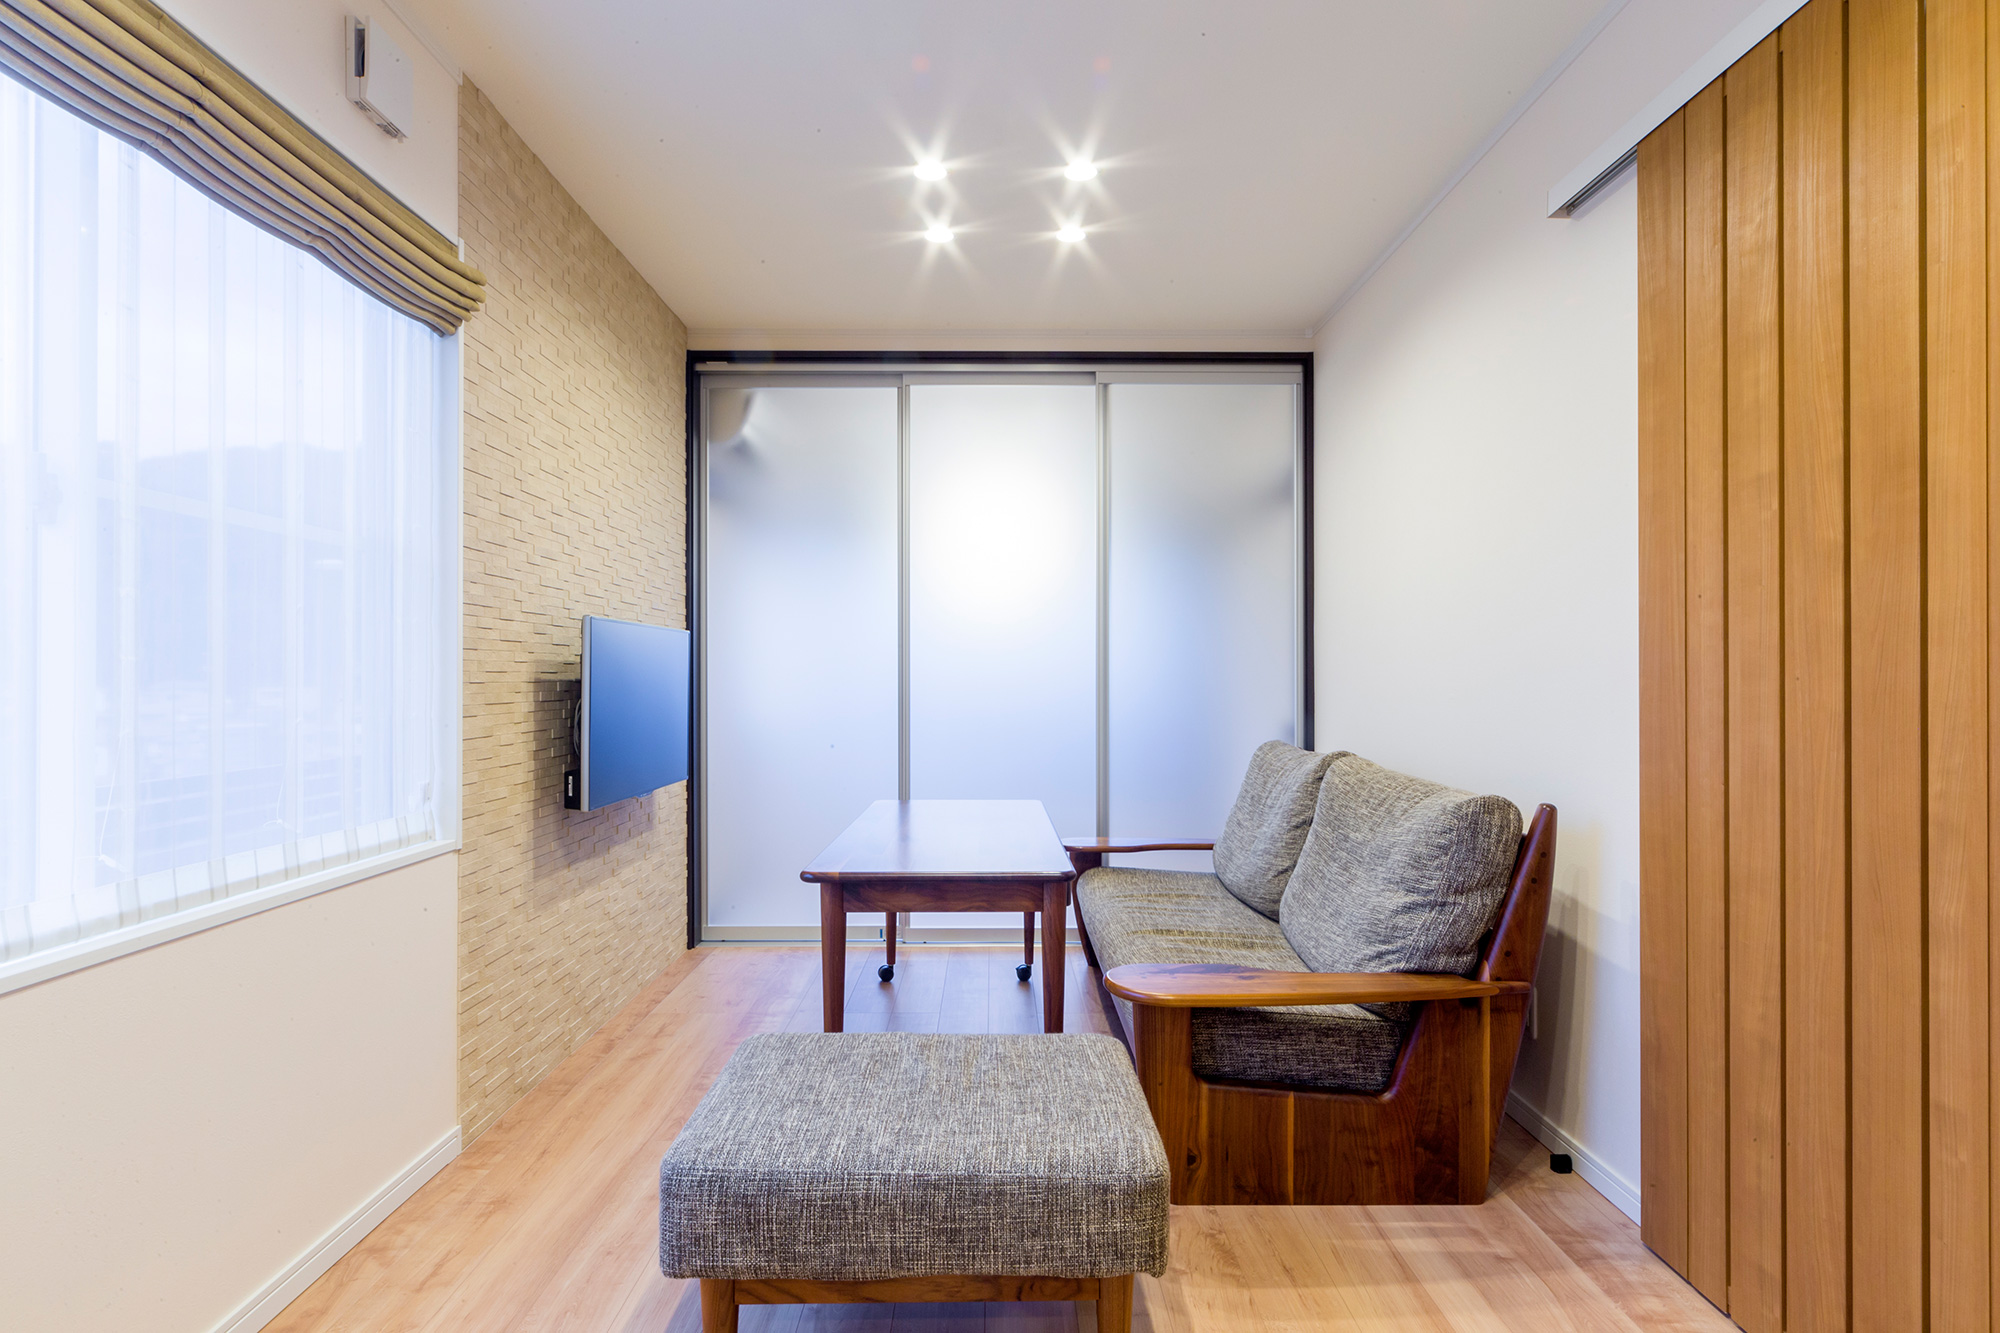 和室とリビングの仕切り扉は光を通す樹脂製に変更。空間を区切る際もリビングは明るさをキープ。